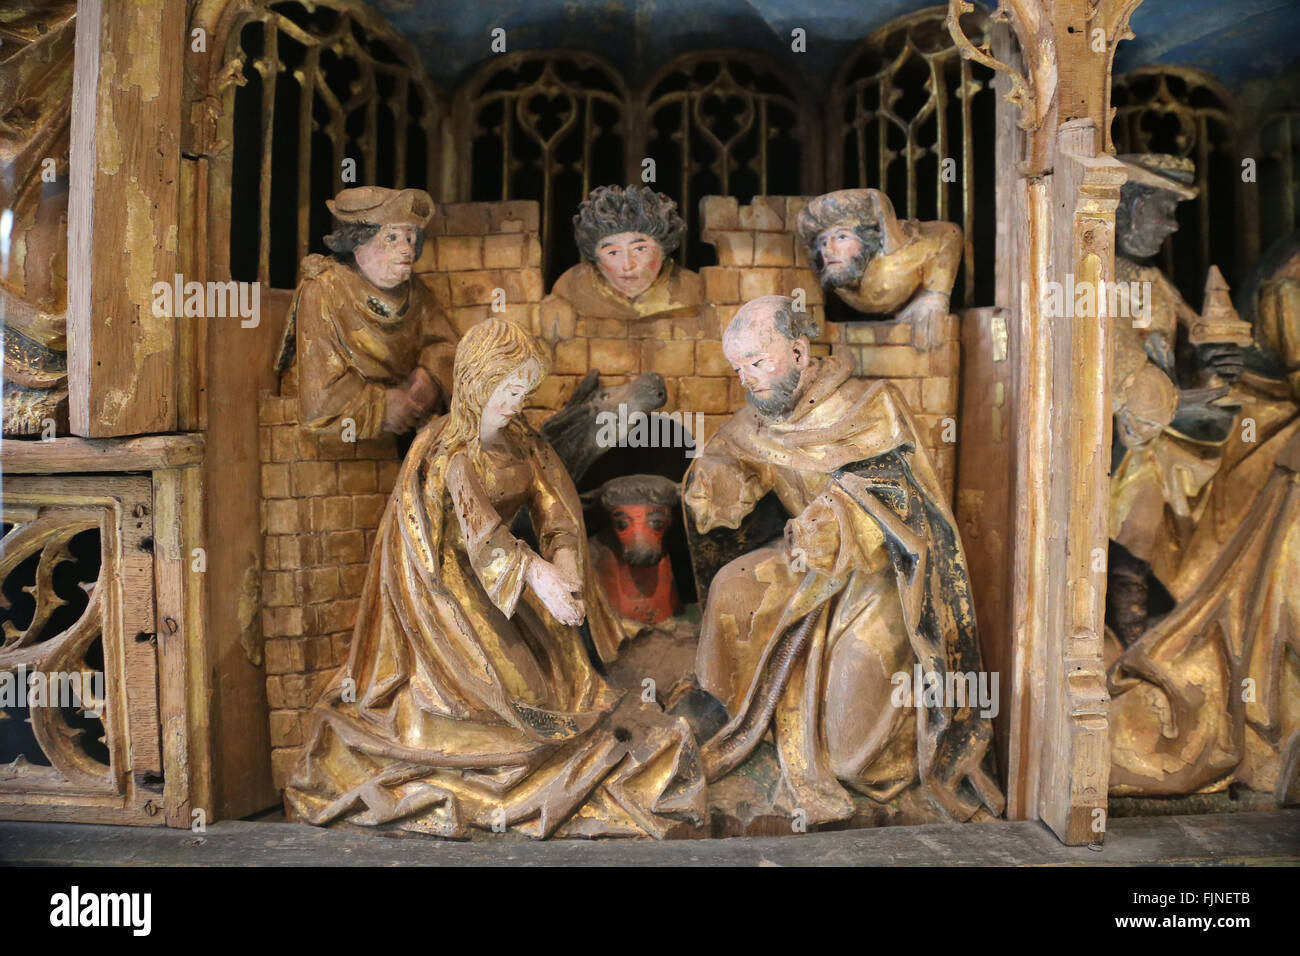 Spätgotik. Altarbild von Leidenschaft und Christi Kindheit. Holz. Polychrome. Von Saint-Sulpice von Chalons-e. Champagne, Frankreich Stockfoto